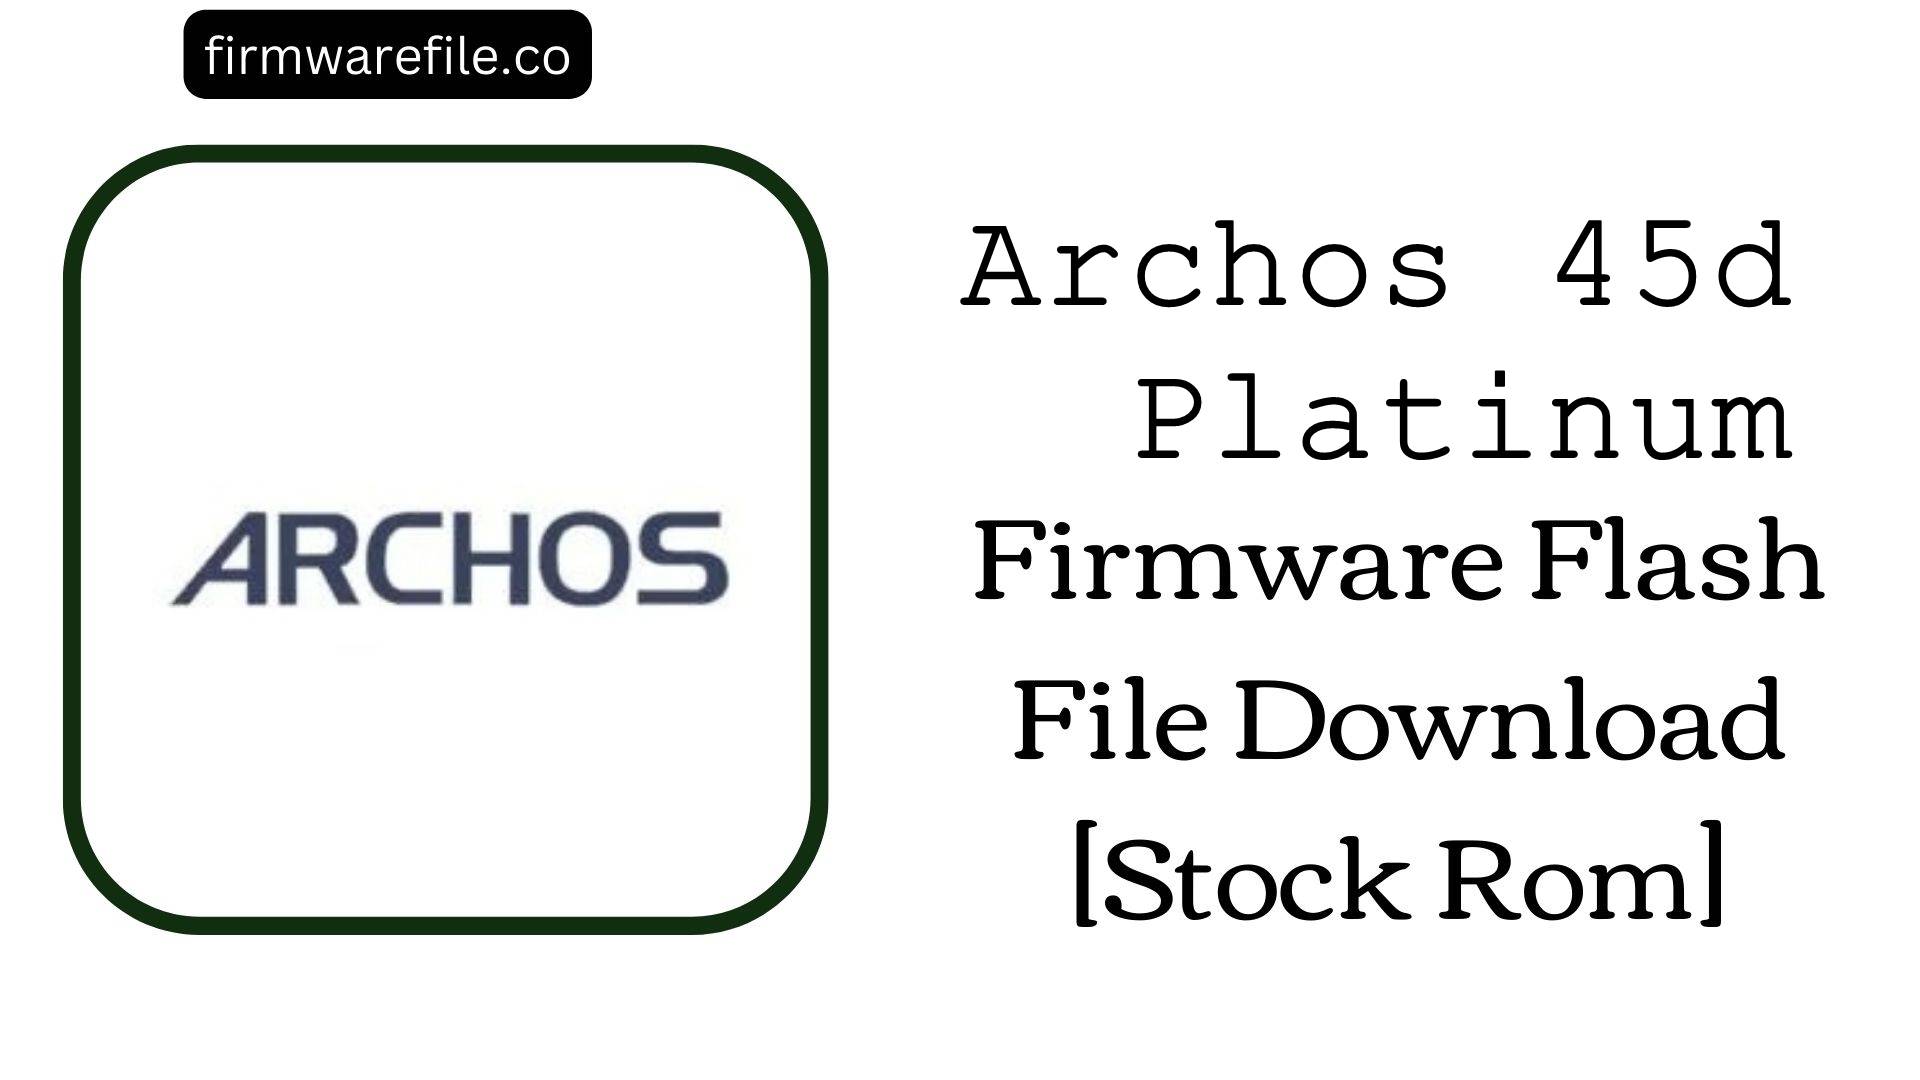 Archos 45d Platinum